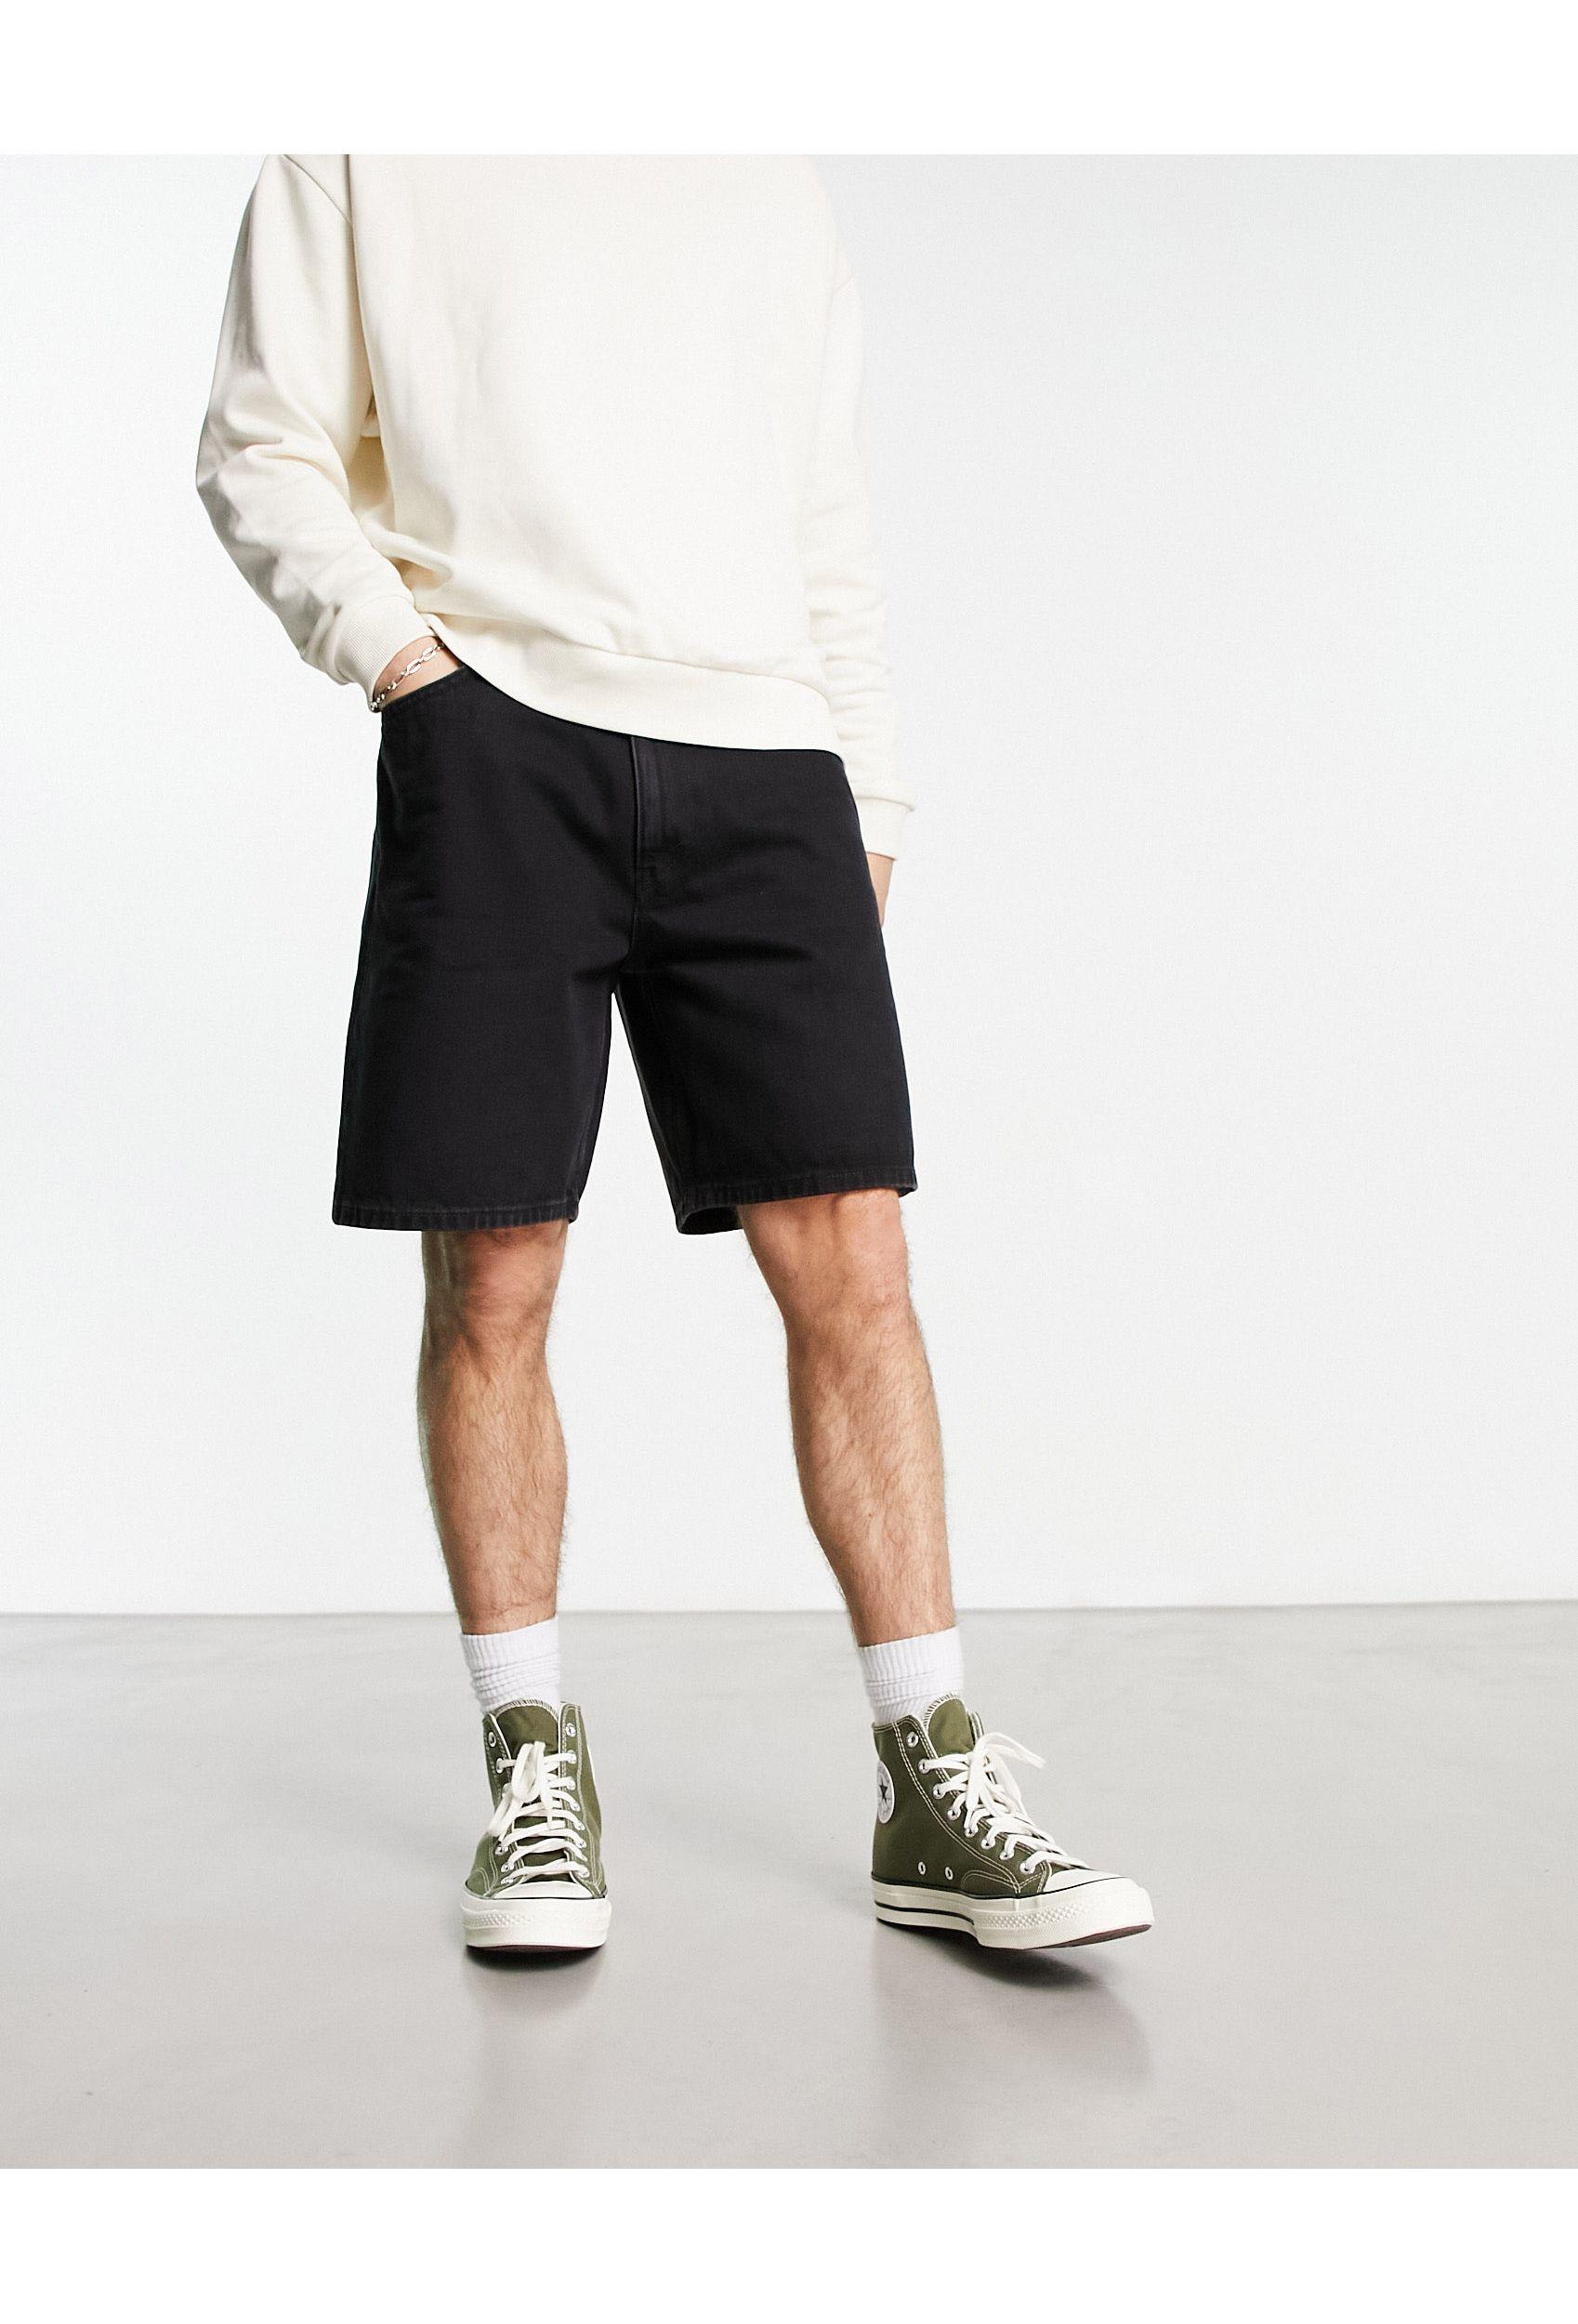 Slim Denim shorts - Pale denim blue - Men | H&M